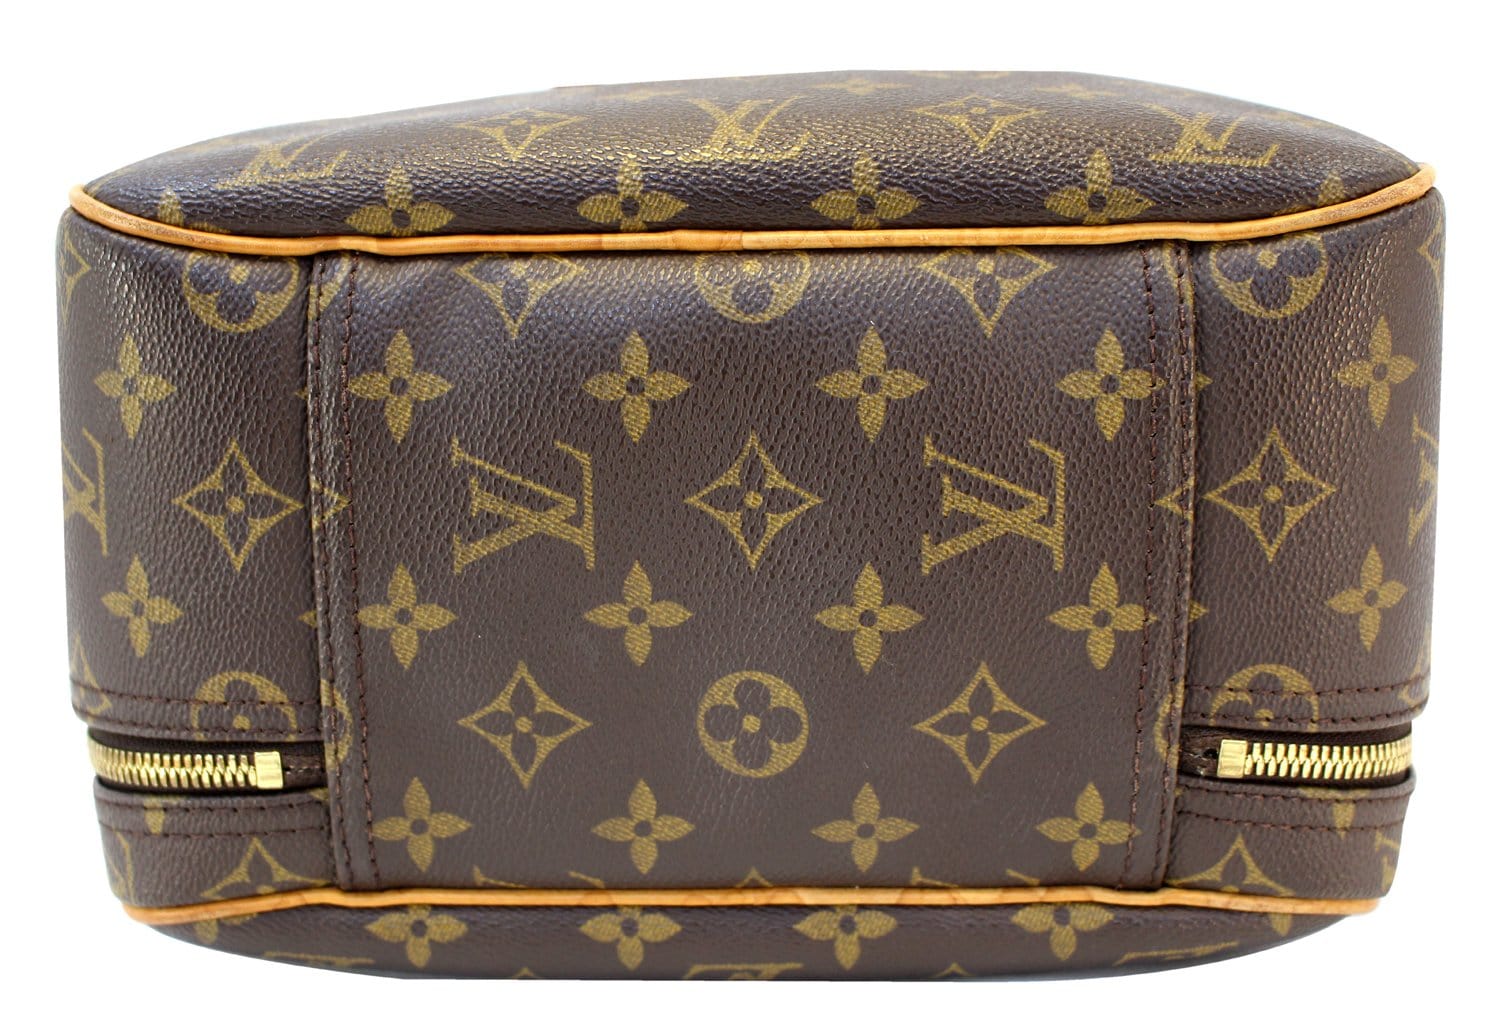 Louis Vuitton Monogram Excursion Shoe Bag - THE PURSE AFFAIR